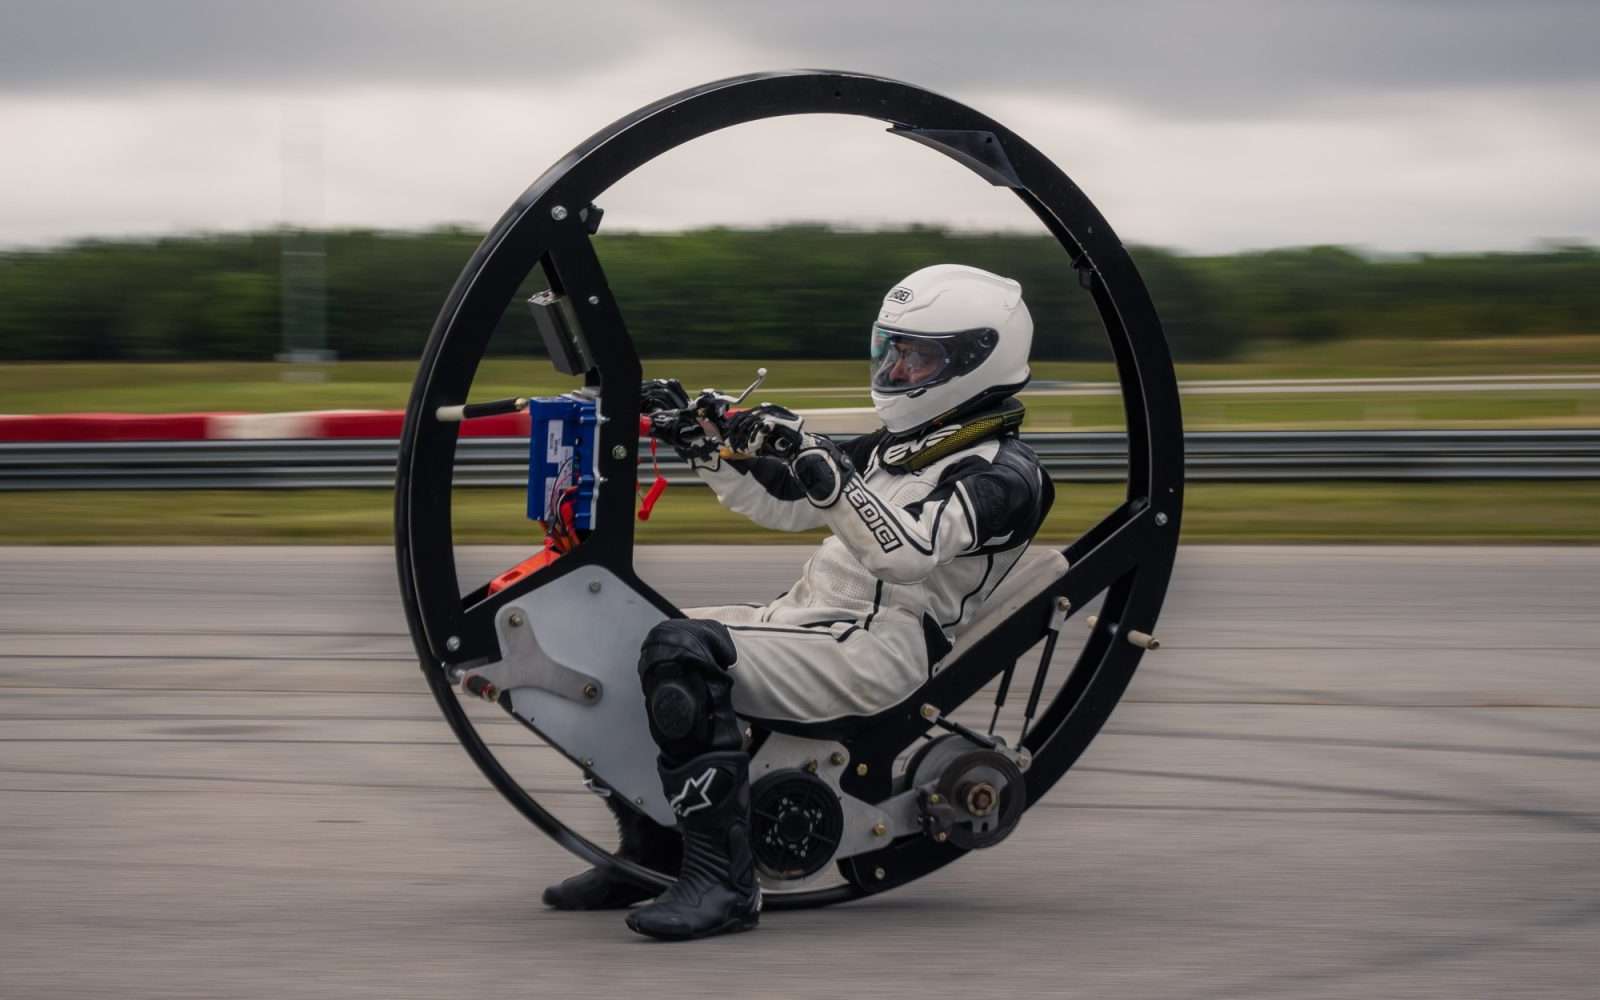 Cette monoroue électrique s'attaque au record du monde de vitesse